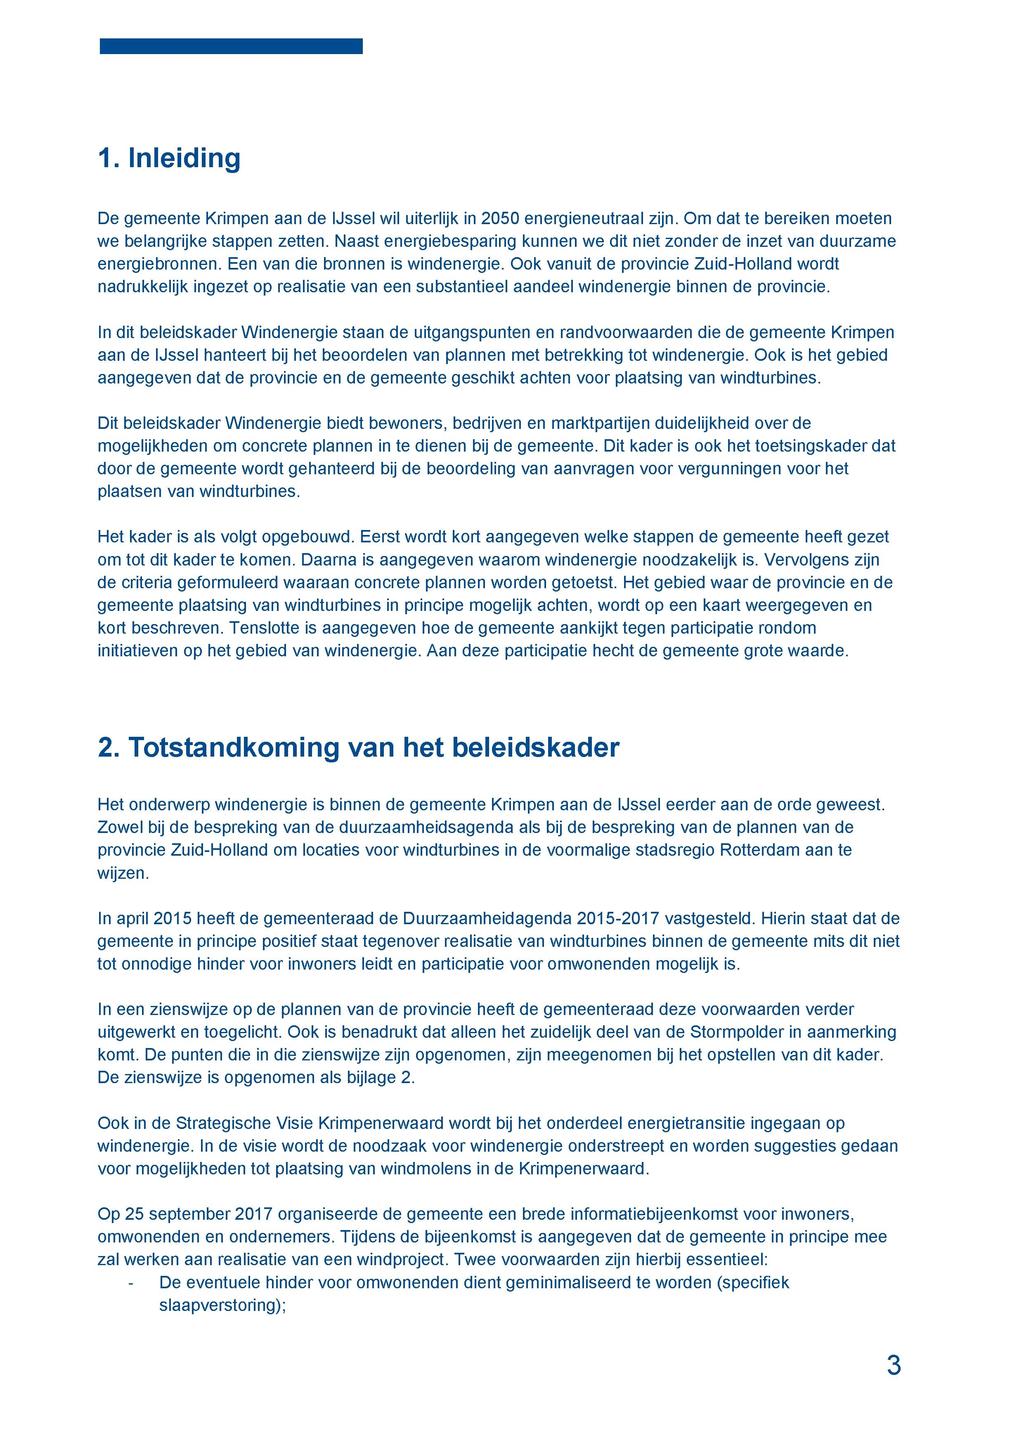 1. Inleiding De gemeente Krimpen aan de IJssel wil uiterlijk in 2050 energieneutraal zijn. Om dat te bereiken moeten we belangrijke stappen zetten.